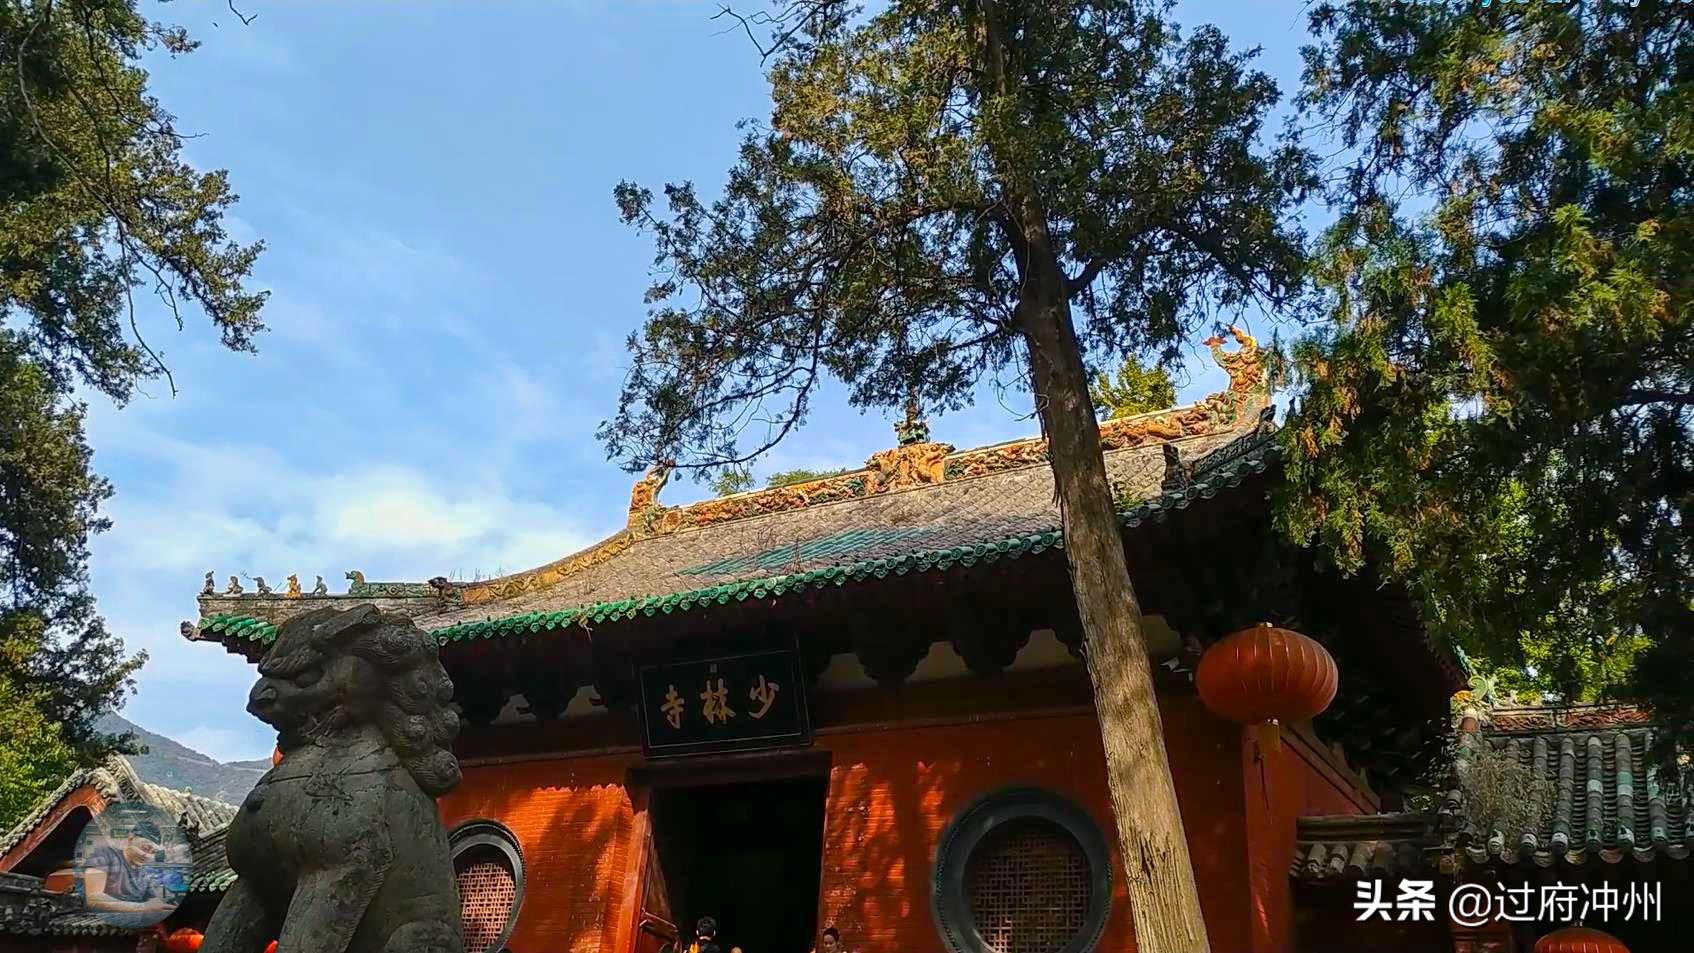 到了河南必须去看的景点之一，必须有少林寺